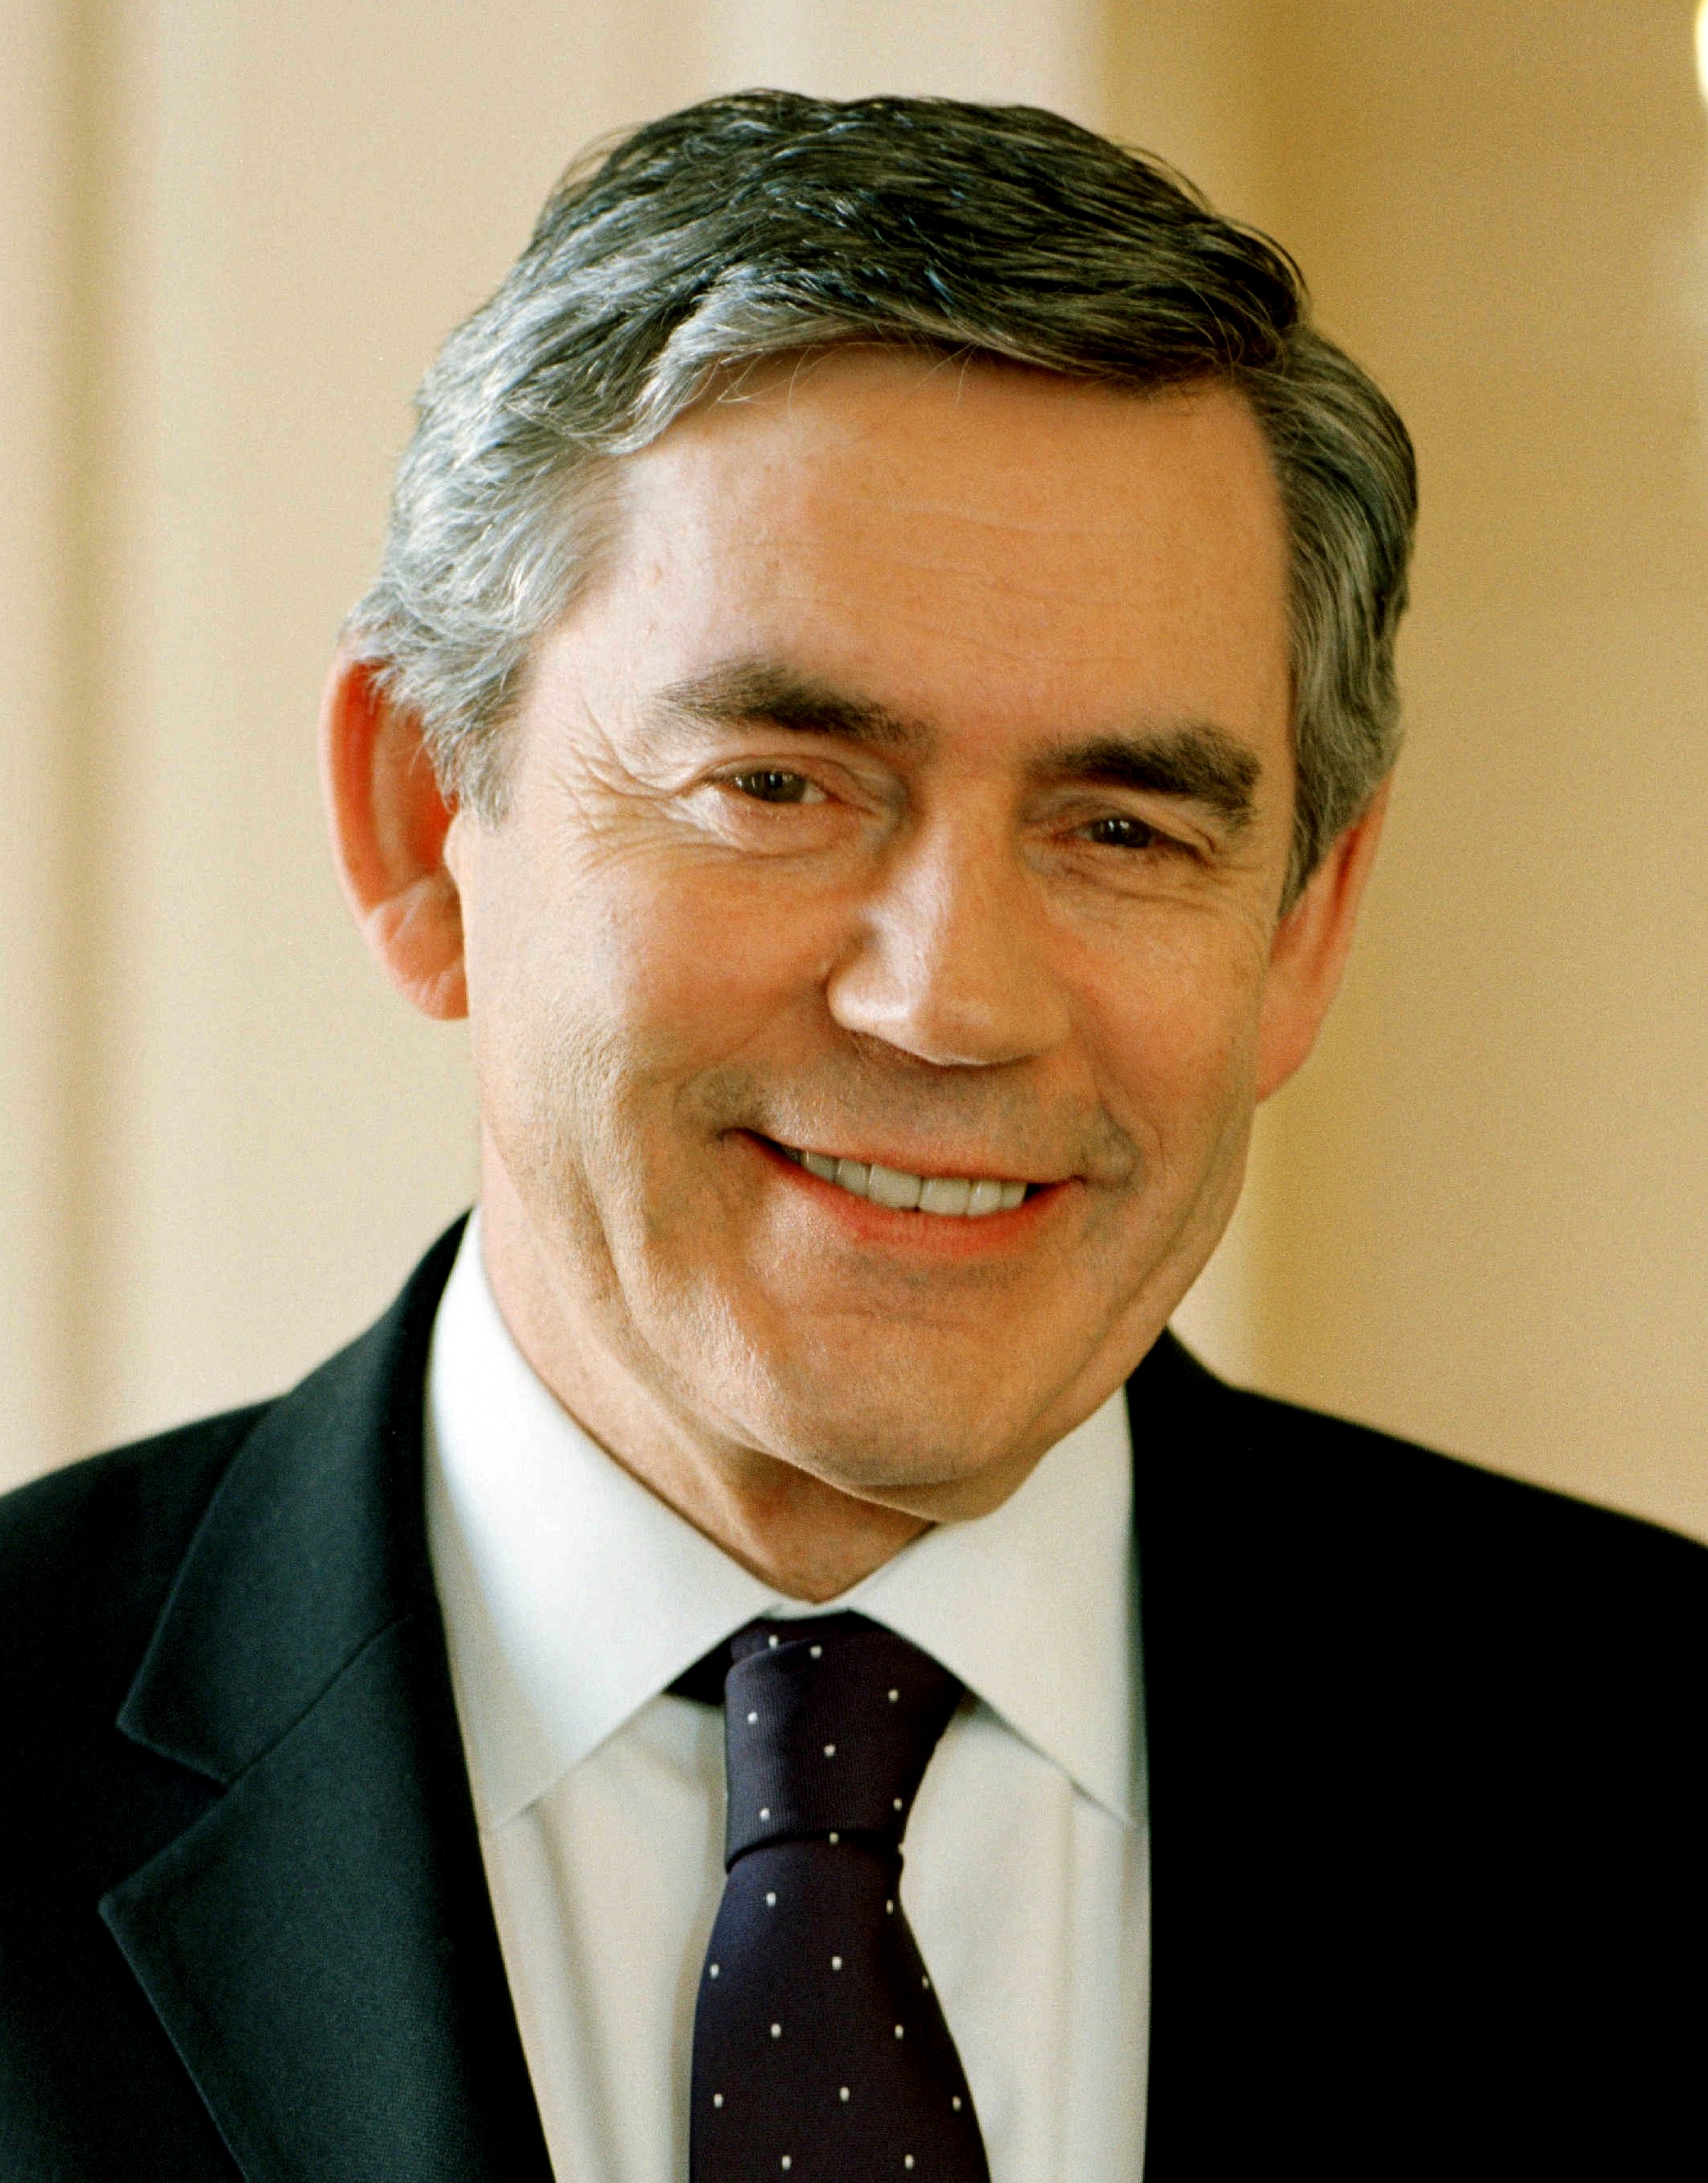 auteur Gordon Brown de la citation Nous entrons dans une époque où le gouvernement national, au lieu de diriger, permet de travailler de puissantes initiatives régionales et locales, où la Grande-Bretagne devient comme elle devrait être - une Grande-Bretagne des nations et des régions.